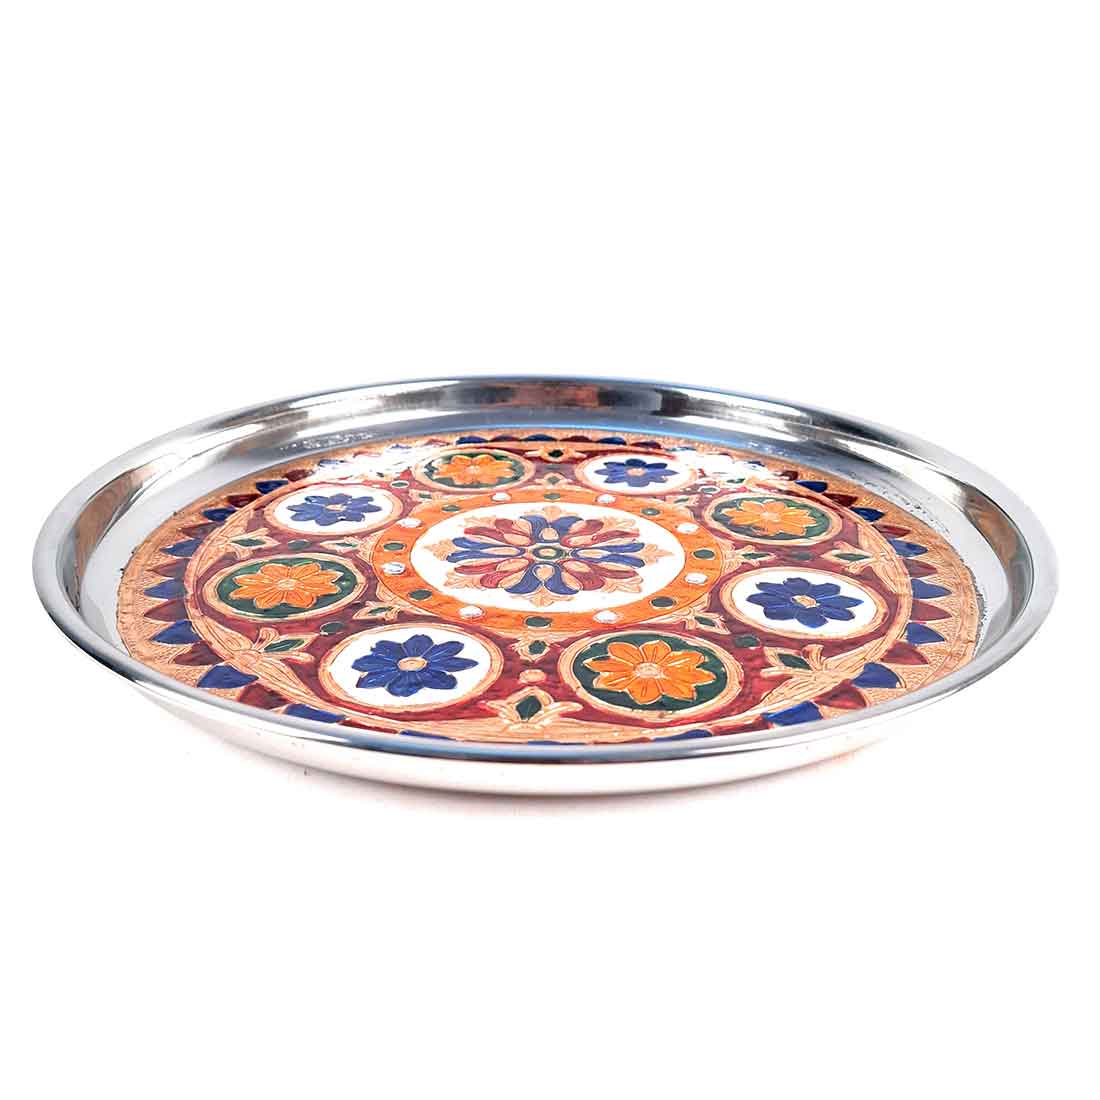 Decorative Plate | Puja Thali -Flower Design - For Pooja, Karwachauth & Festivals - 11 Inch - ApkaMart